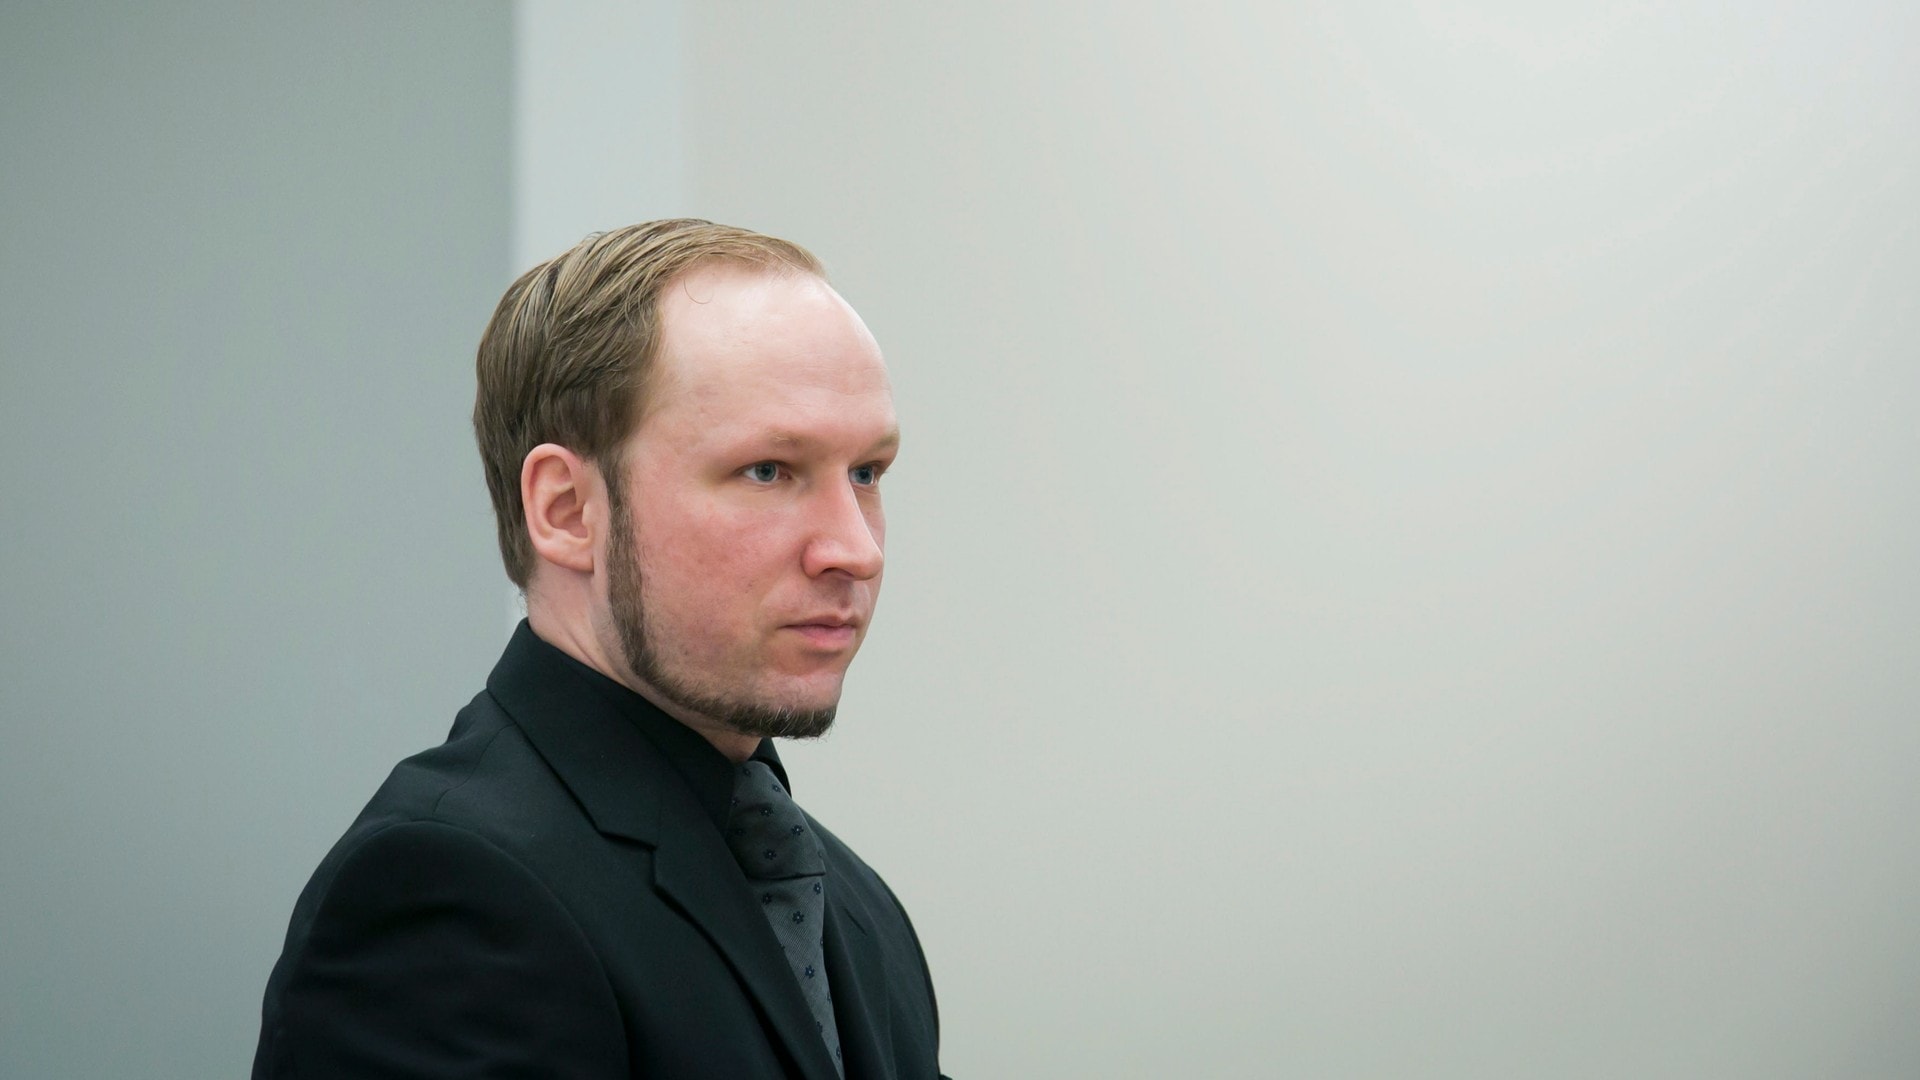 Flertallet vil ha Breivik i fengsel - 22. juli 2011 ...